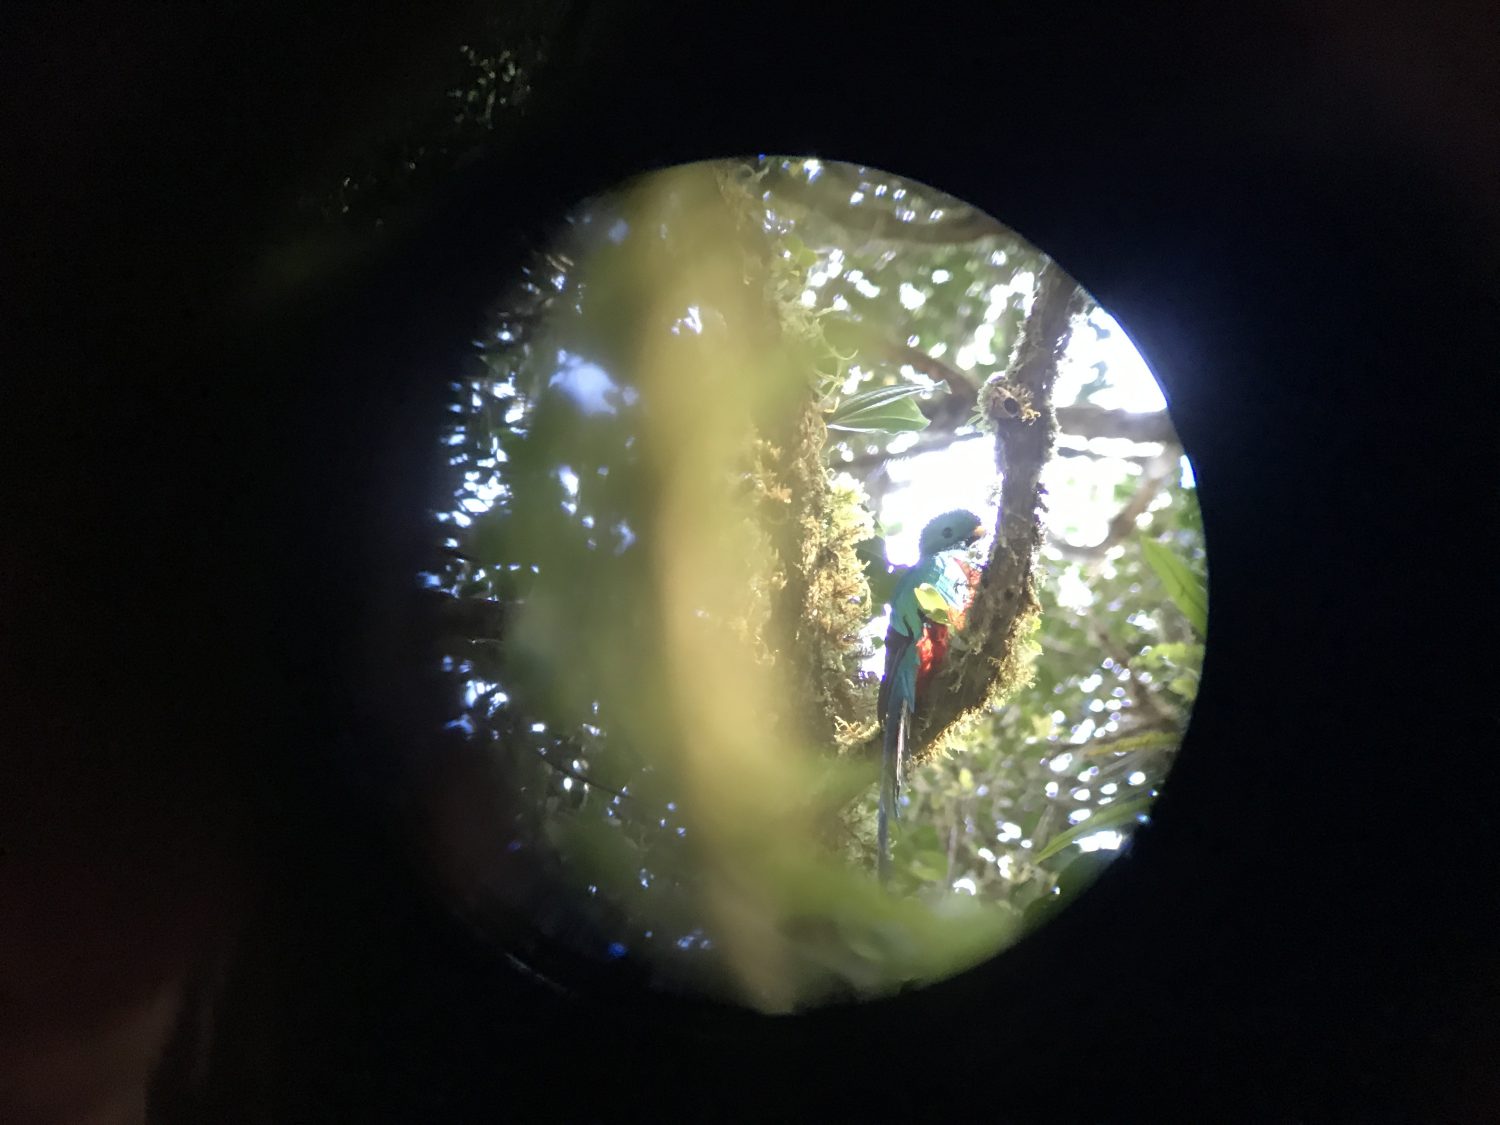 quetzal monteverde costa rica